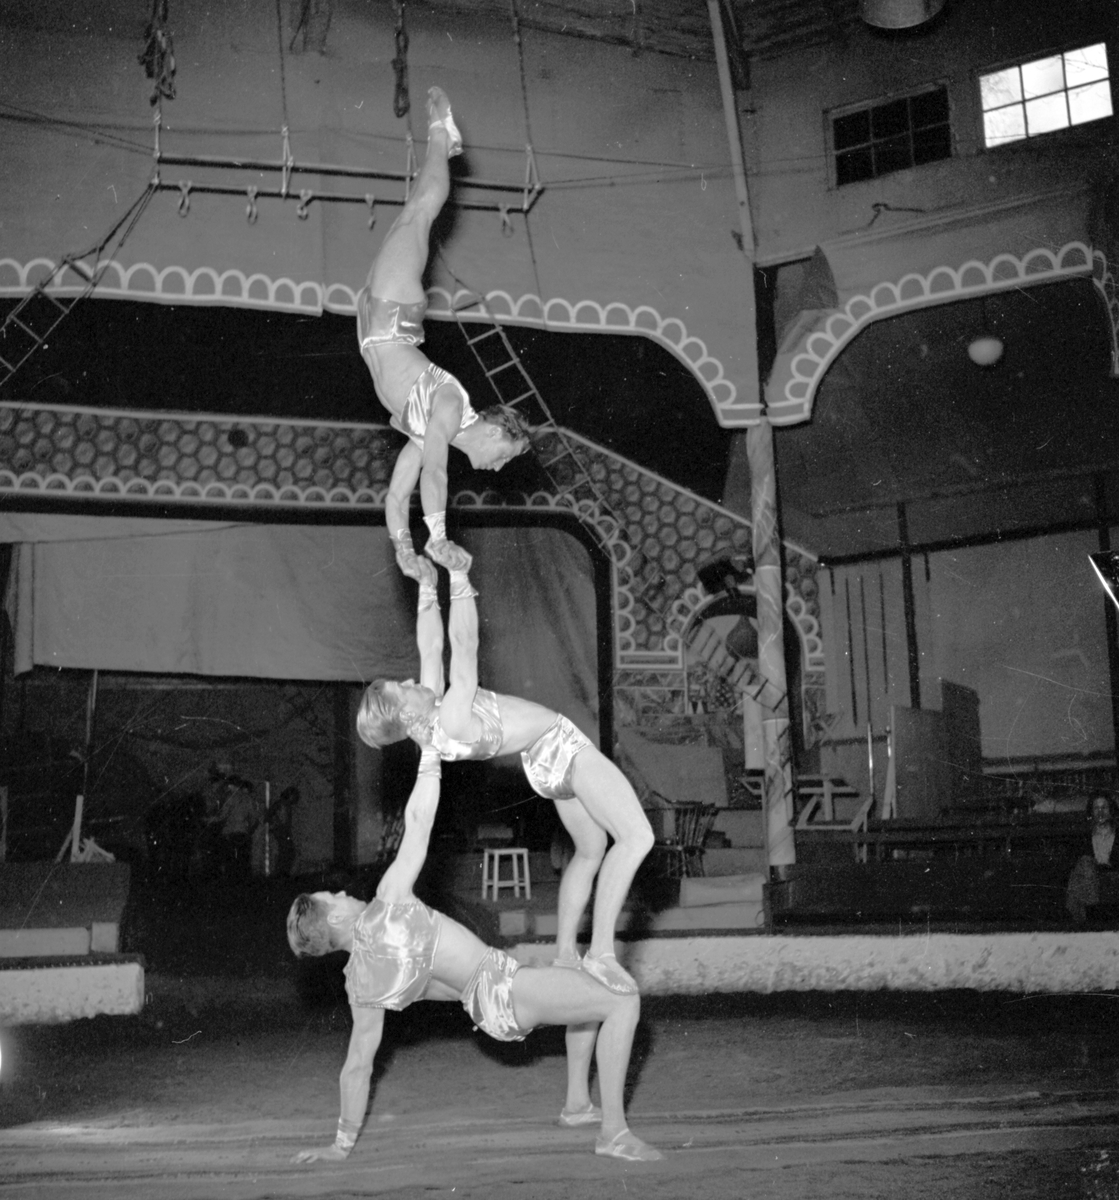 Furuviksparken invigdes pingstdagen 1936.

Cirkusbyggnaden Teater-Cirkus med cirka 600 platser, uppförd 1940.










